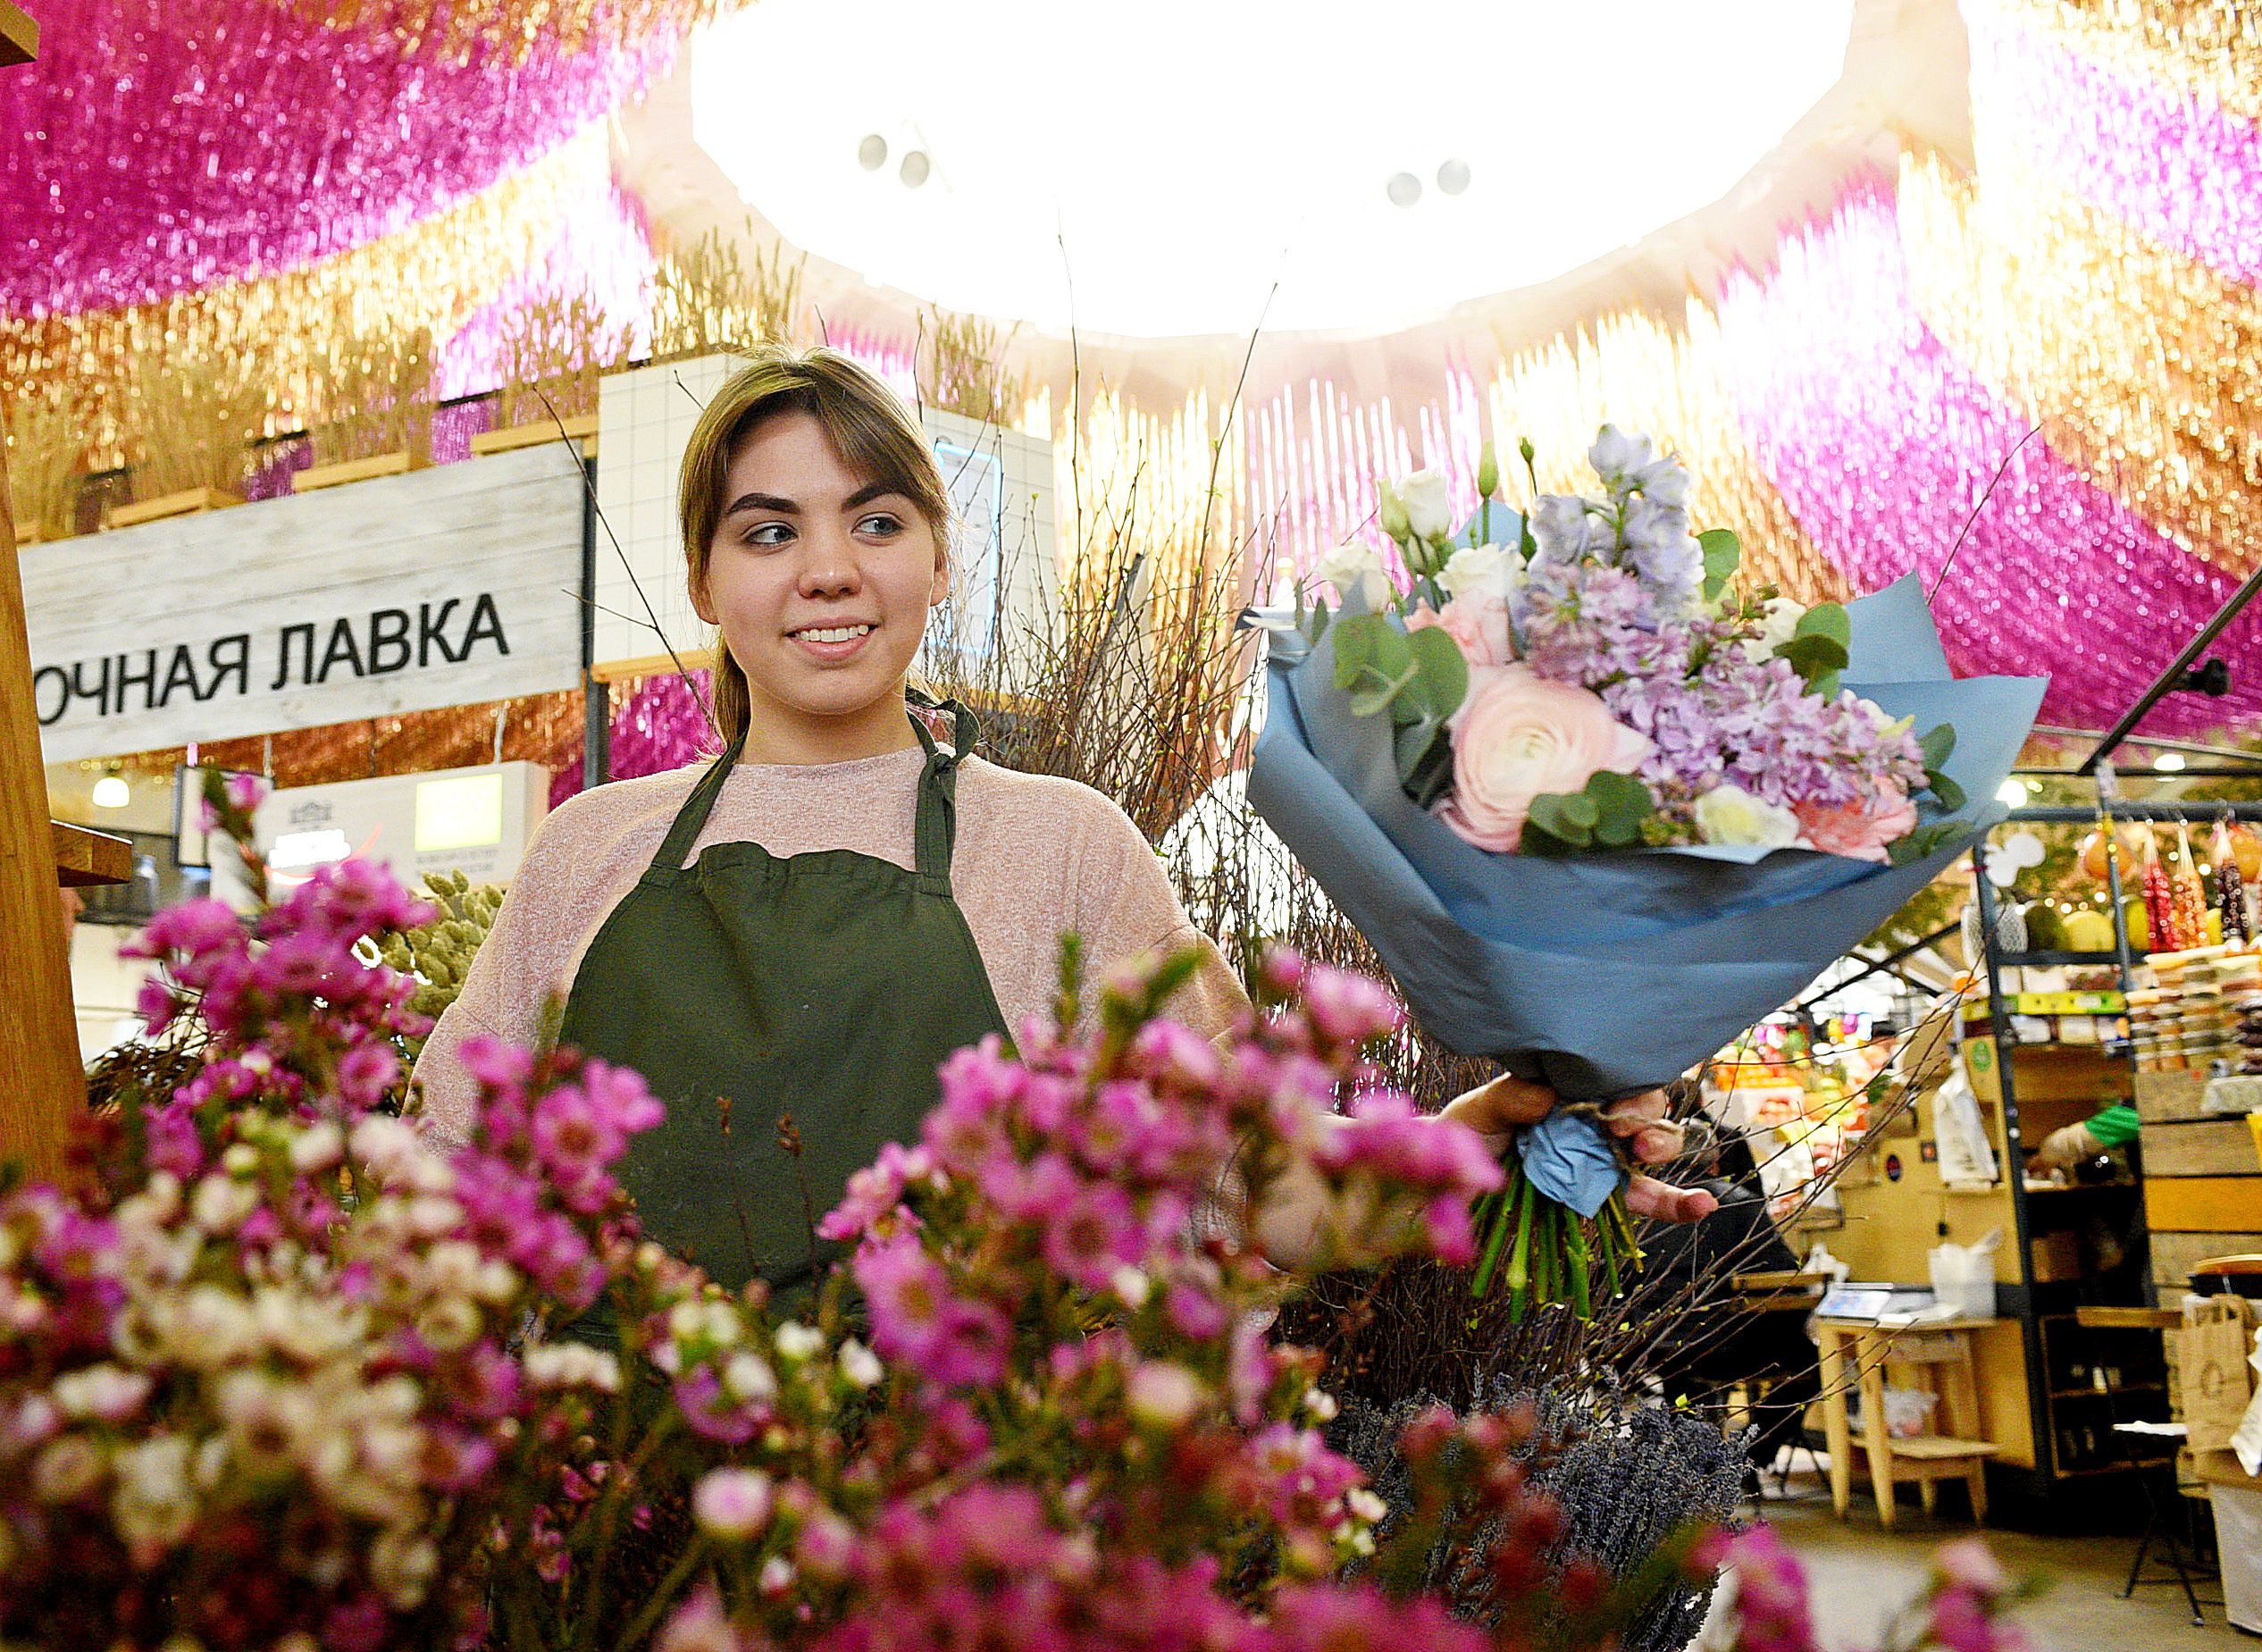 Даниловский рынок может стать самым романтичным местом в Москве